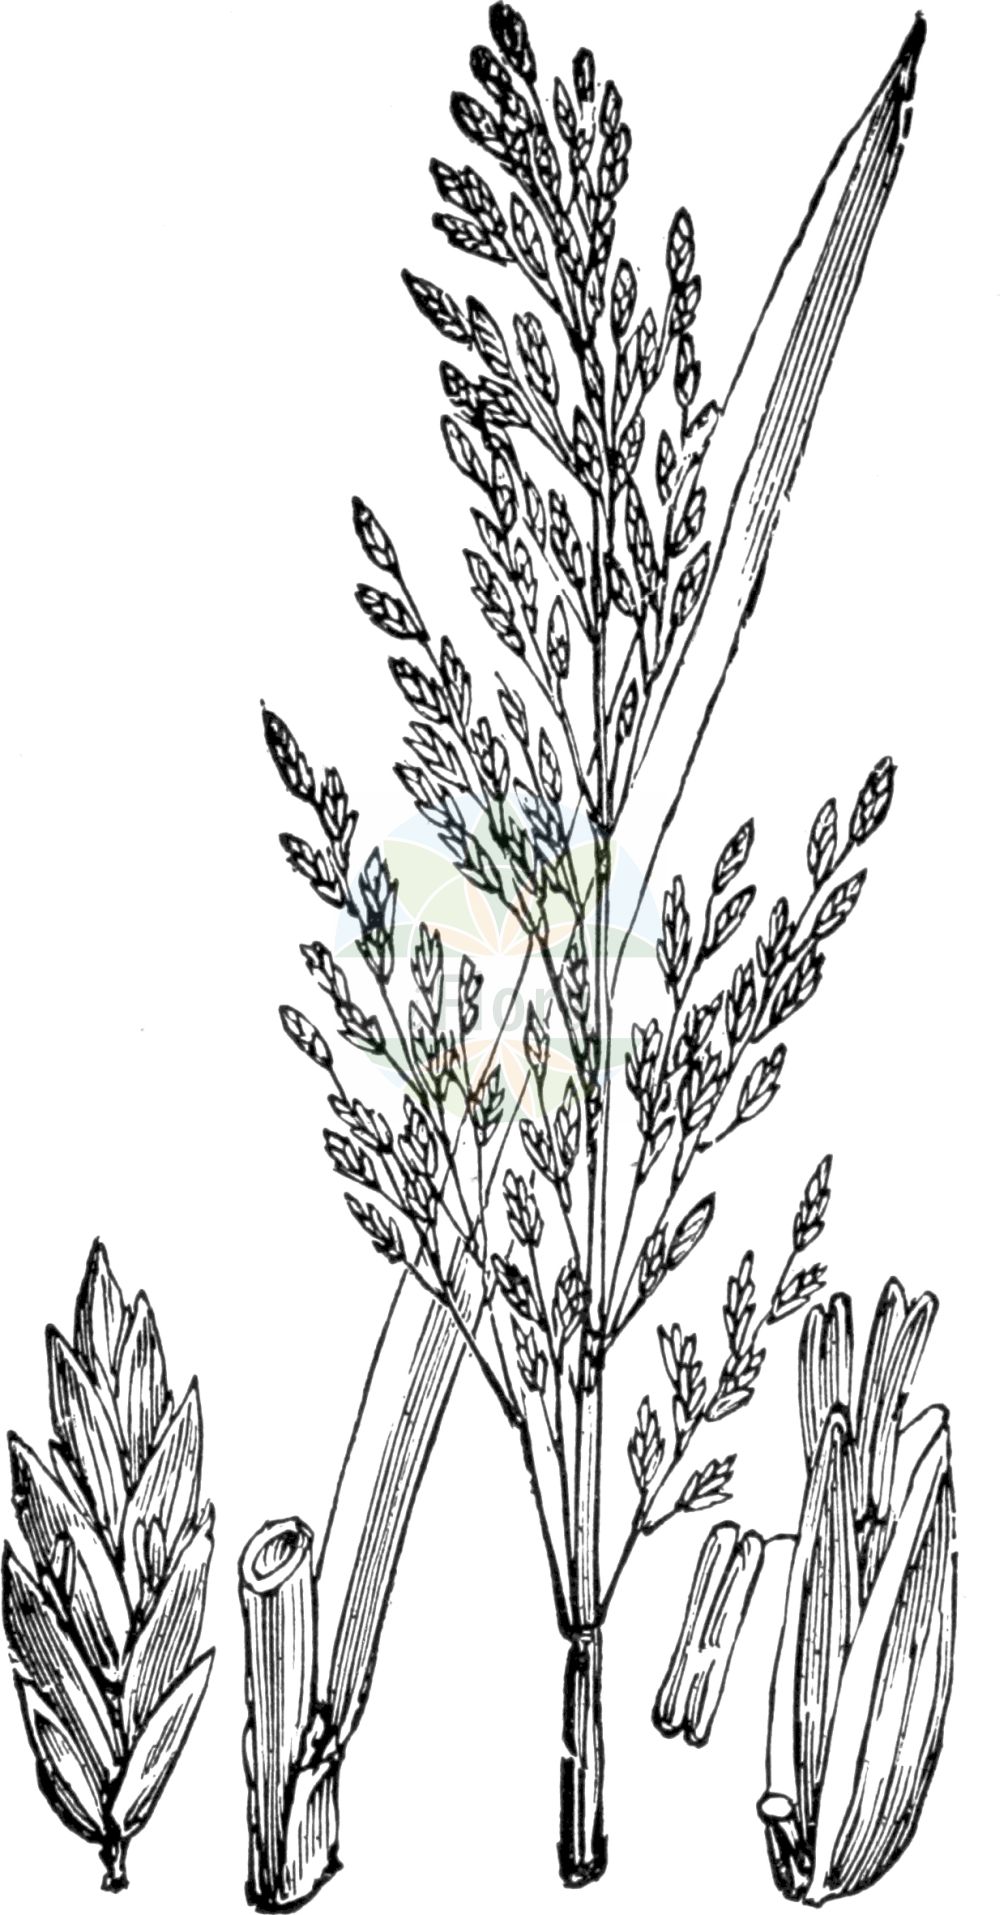 Historische Abbildung von Glyceria maxima (Großer Schwaden - Reed Sweet-grass). Das Bild zeigt Blatt, Bluete, Frucht und Same. ---- Historical Drawing of Glyceria maxima (Großer Schwaden - Reed Sweet-grass). The image is showing leaf, flower, fruit and seed.(Glyceria maxima,Großer Schwaden,Reed Sweet-grass,Glyceria altissima,Glyceria aquatica,Glyceria maxima,Glyceria spectabilis,Molinia maxima,Grosser Schwaden,Wasser-Schwaden,Reed Sweet-grass,Great Watergrass,Reed Mannagrass,Swampgrass,Water-meadow Grass,Glyceria,Schwaden,Mannagrass,Poaceae,Süßgräser,Grass family,Blatt,Bluete,Frucht,Same,leaf,flower,fruit,seed,Fitch et al. (1880))